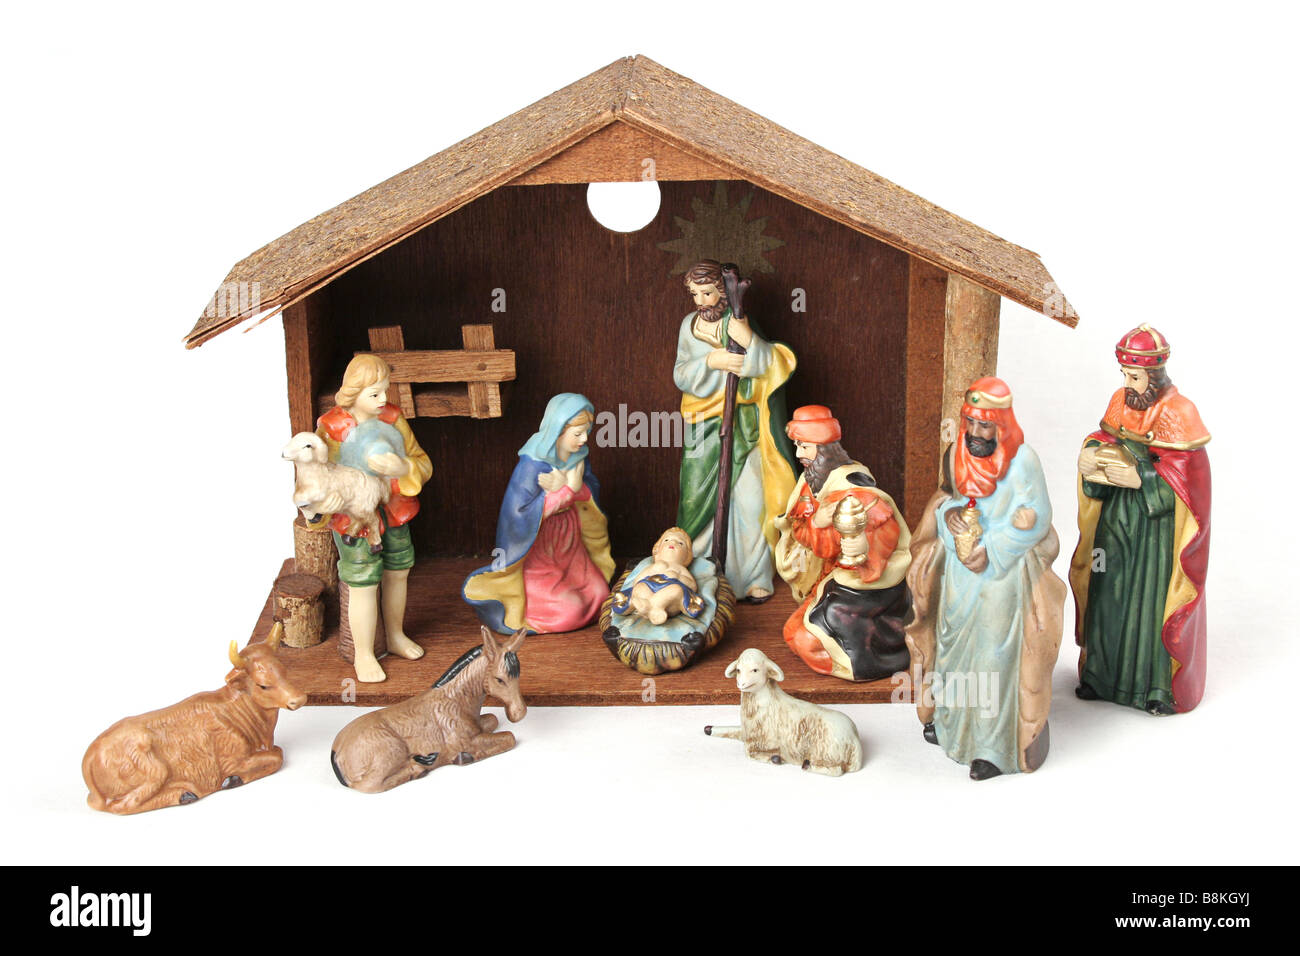 Nativity scene isolated on white background Stock Photo